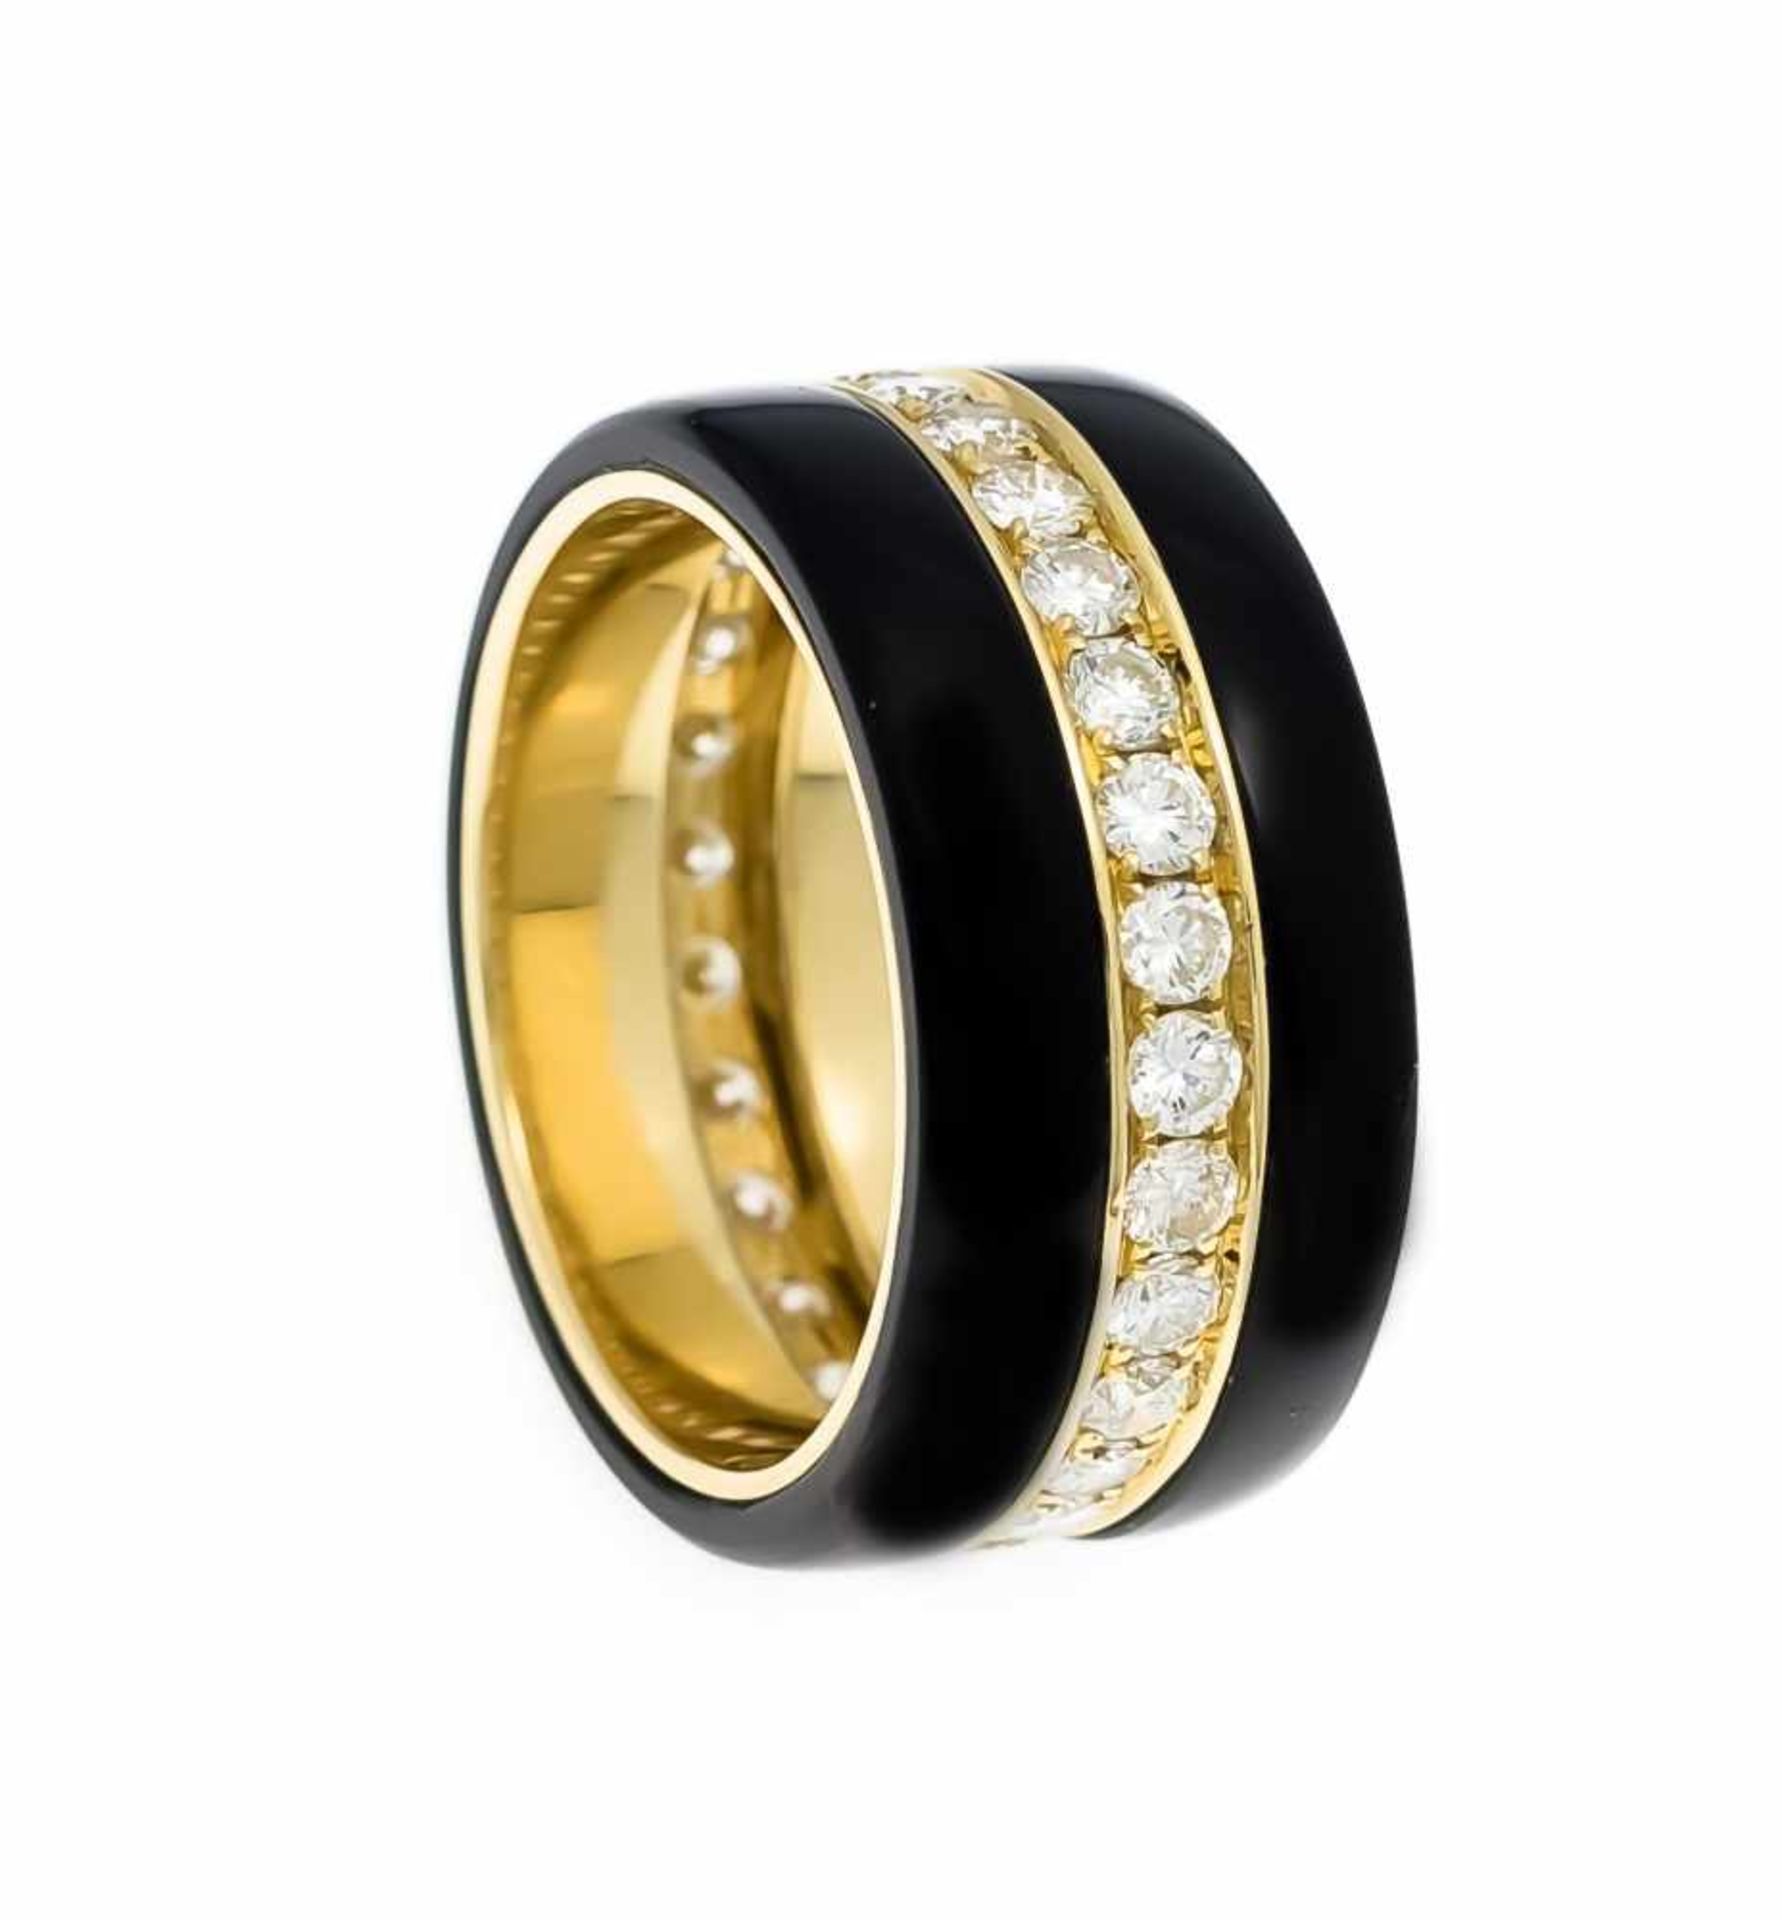 Onyx-Brillant-Ring GG 750/000 mit 2 Onyx-Ringen, zus. 6,84 ct und 28 Brillanten, zus. 1,22ct Weiß (